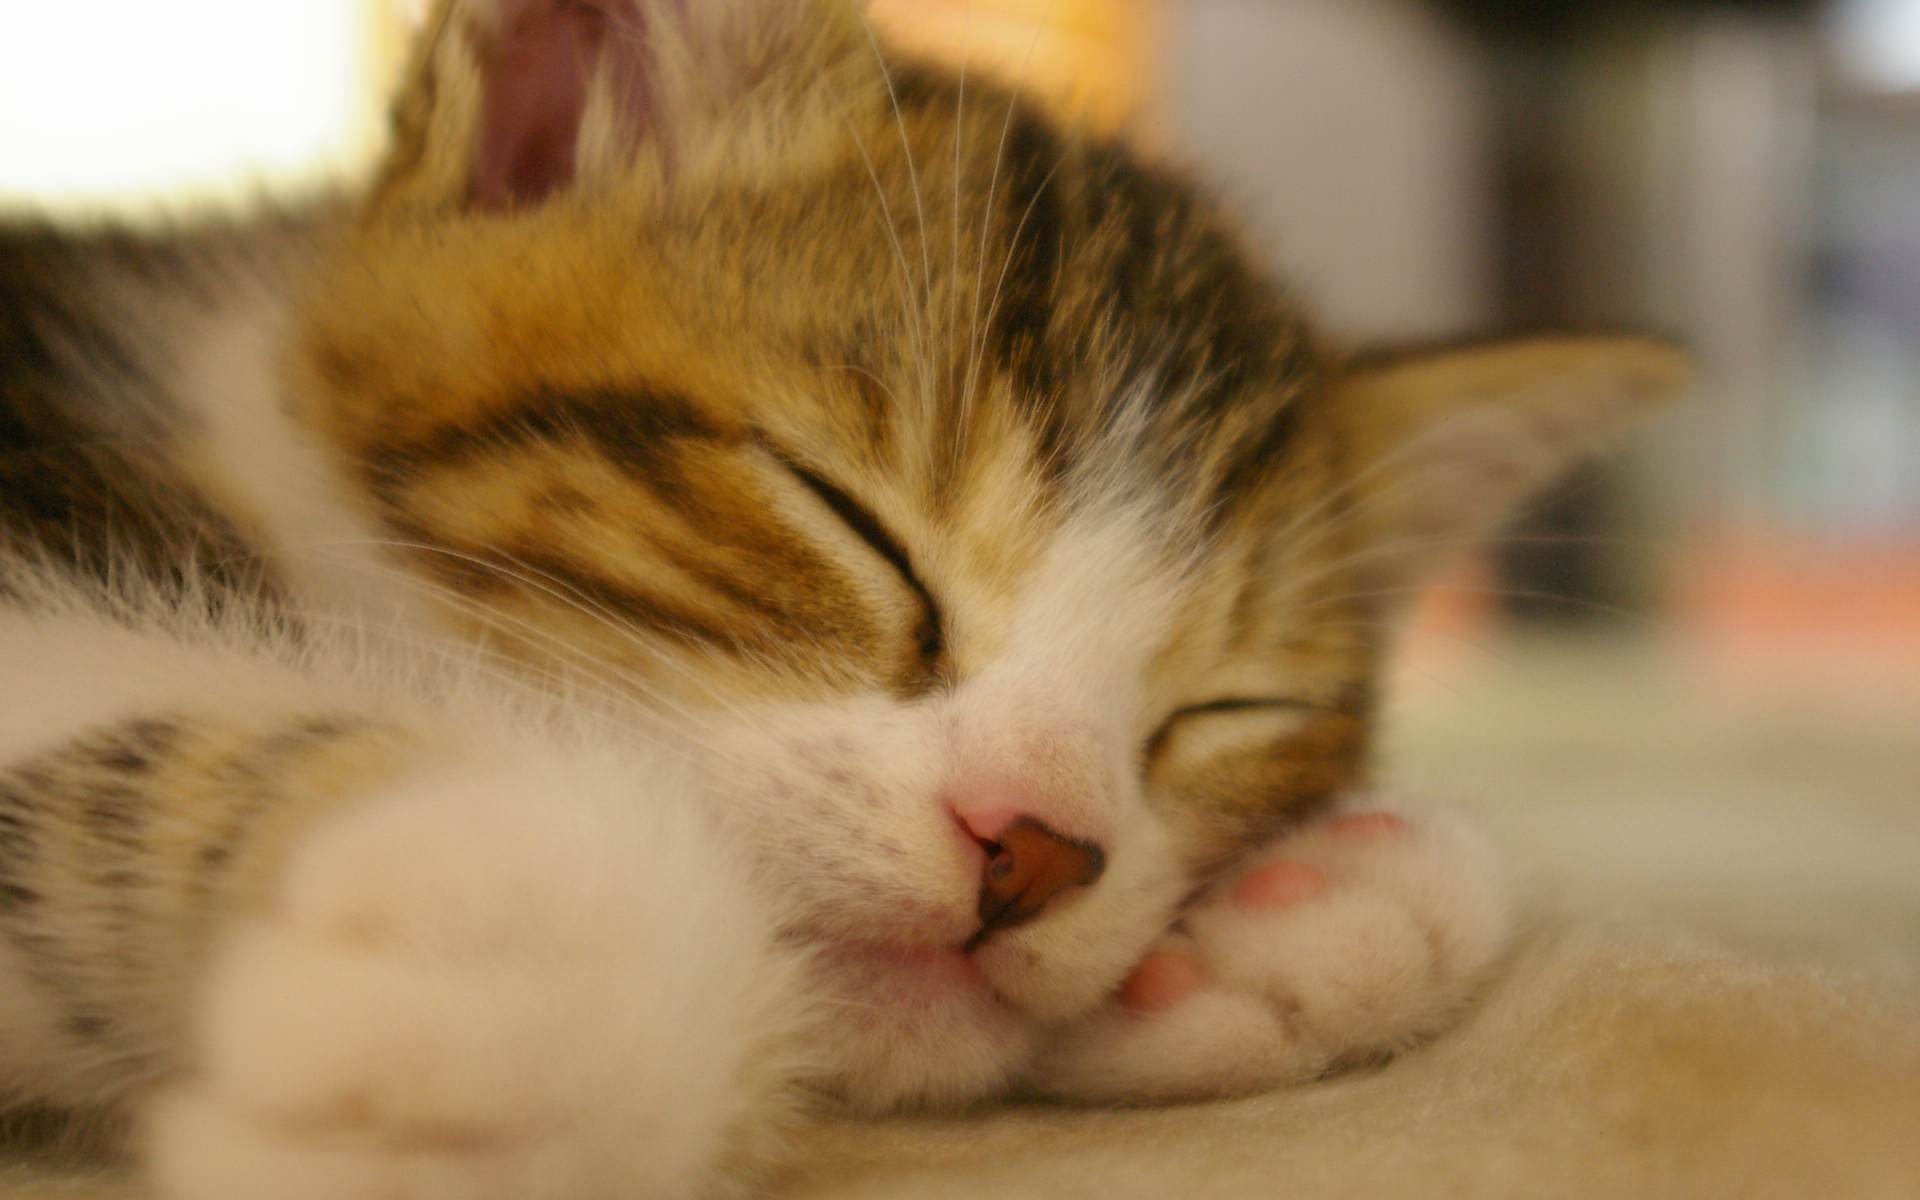 すやすや眠っている猫の可愛い壁紙 可愛い猫の壁紙画像集 Naver まとめ